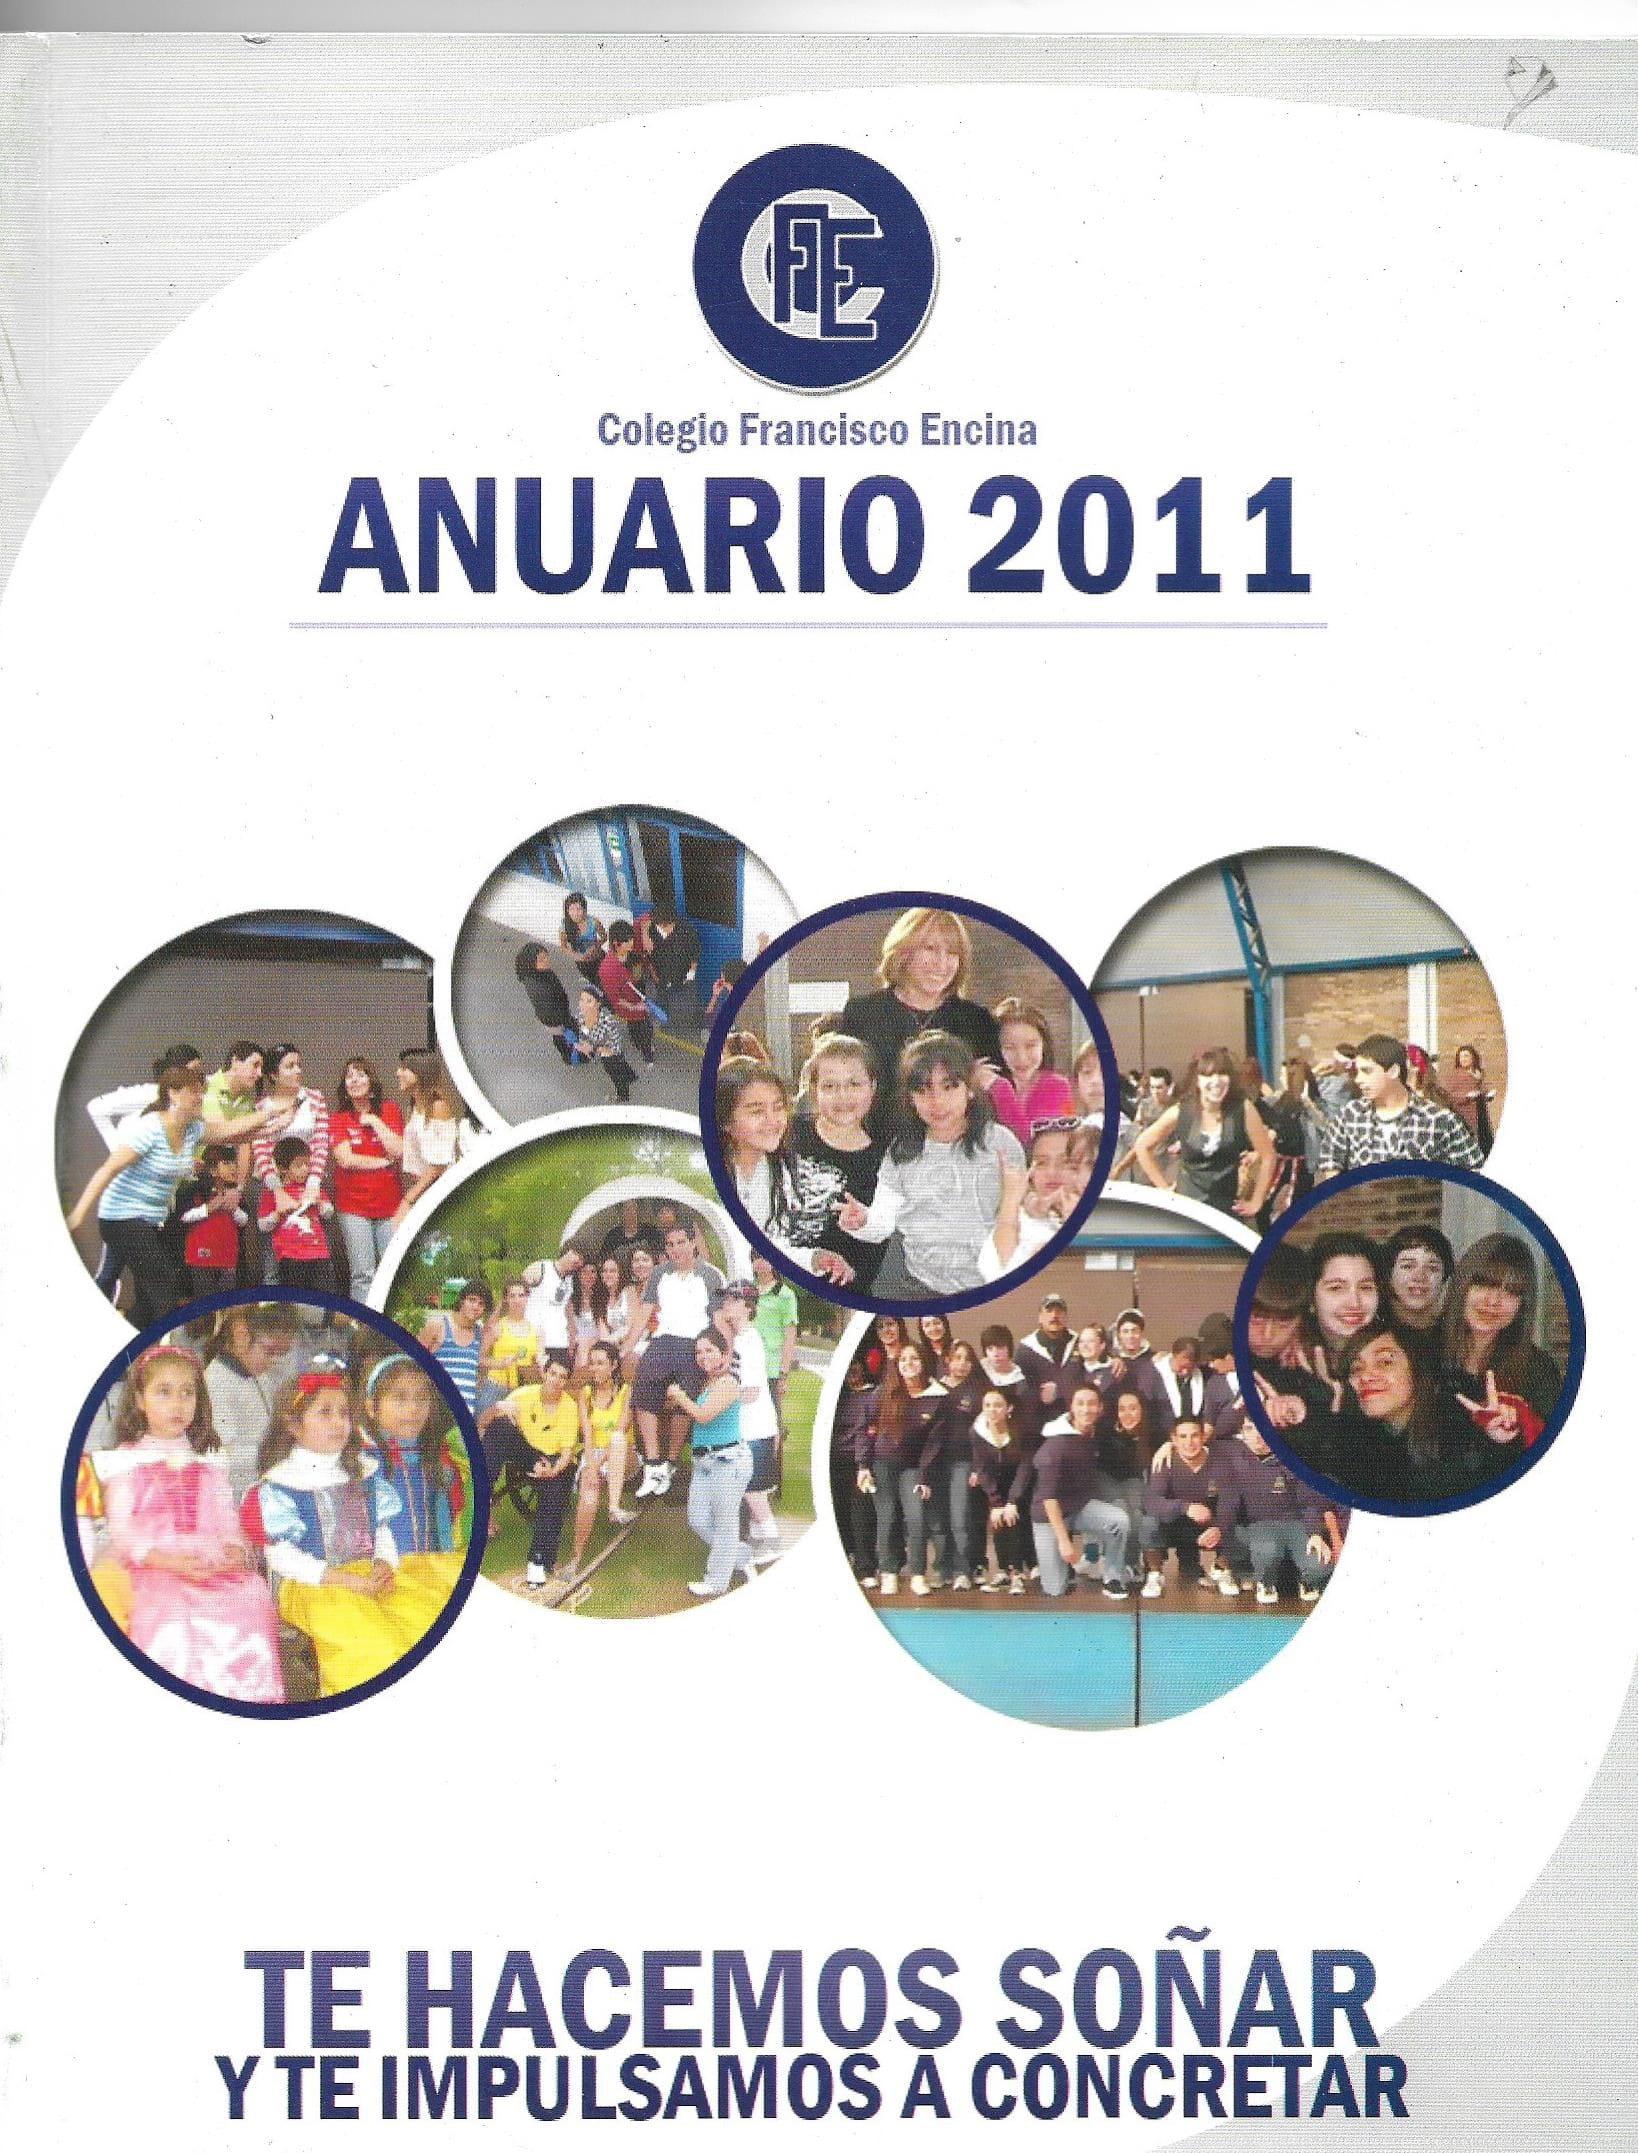 Anuario 2011